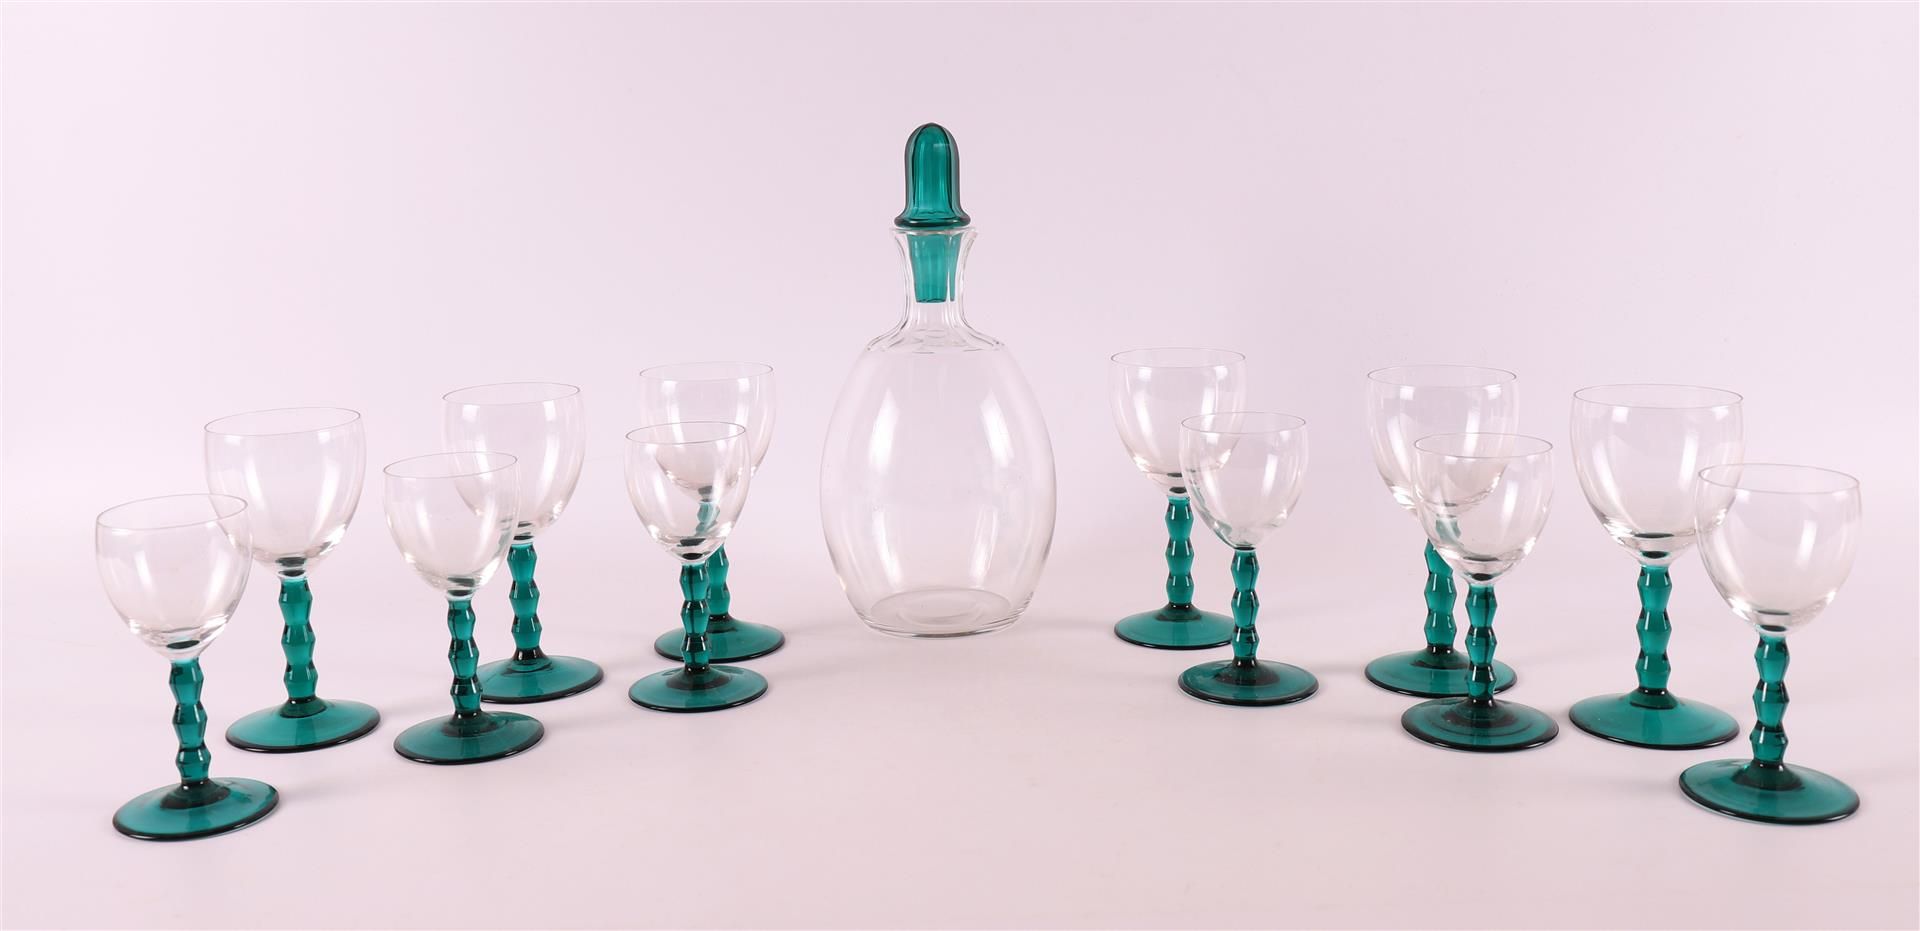 Null 一个透明玻璃利口酒瓶 "Omar"，带绿色玻璃塞子和六个杯子。